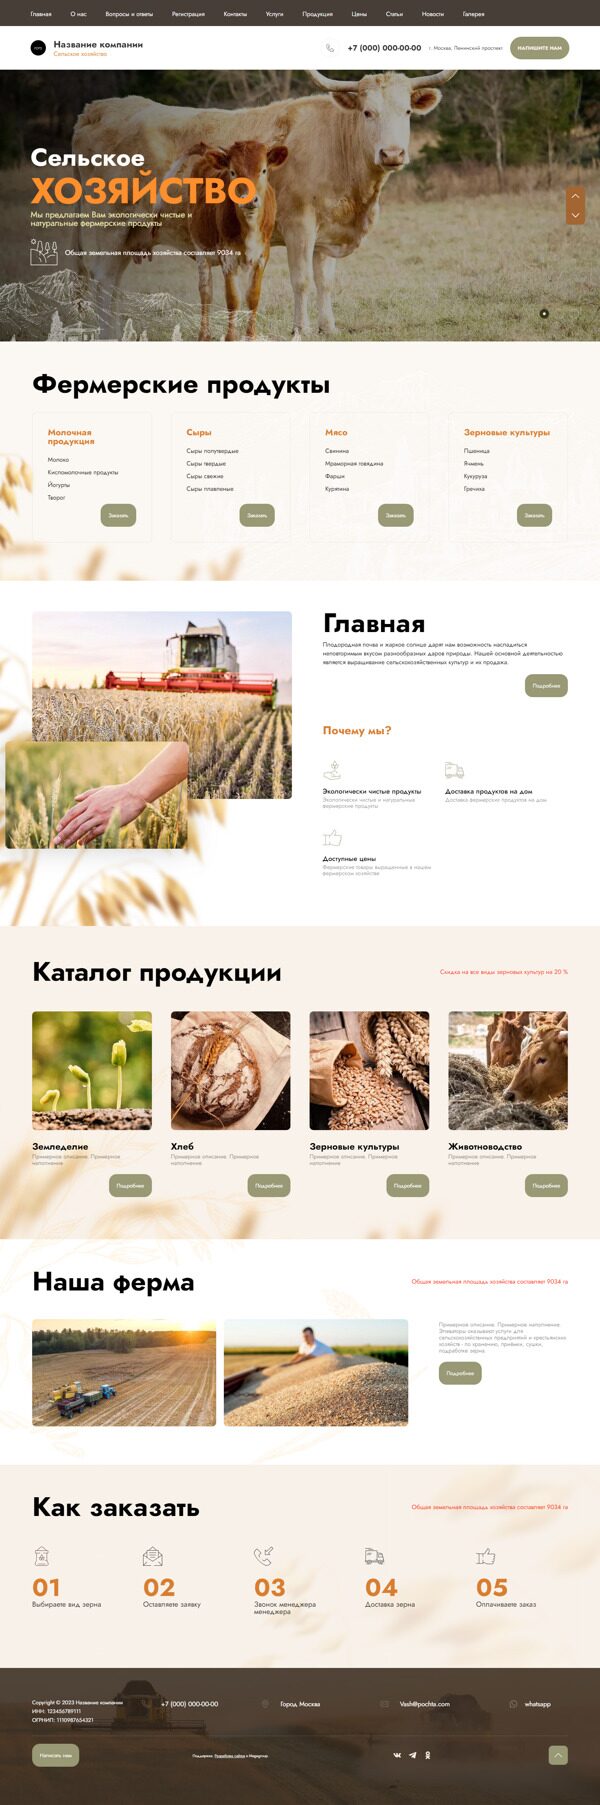 Готовый Сайт-Бизнес № 5198923 - Сельское хозяйство (Десктопная версия)